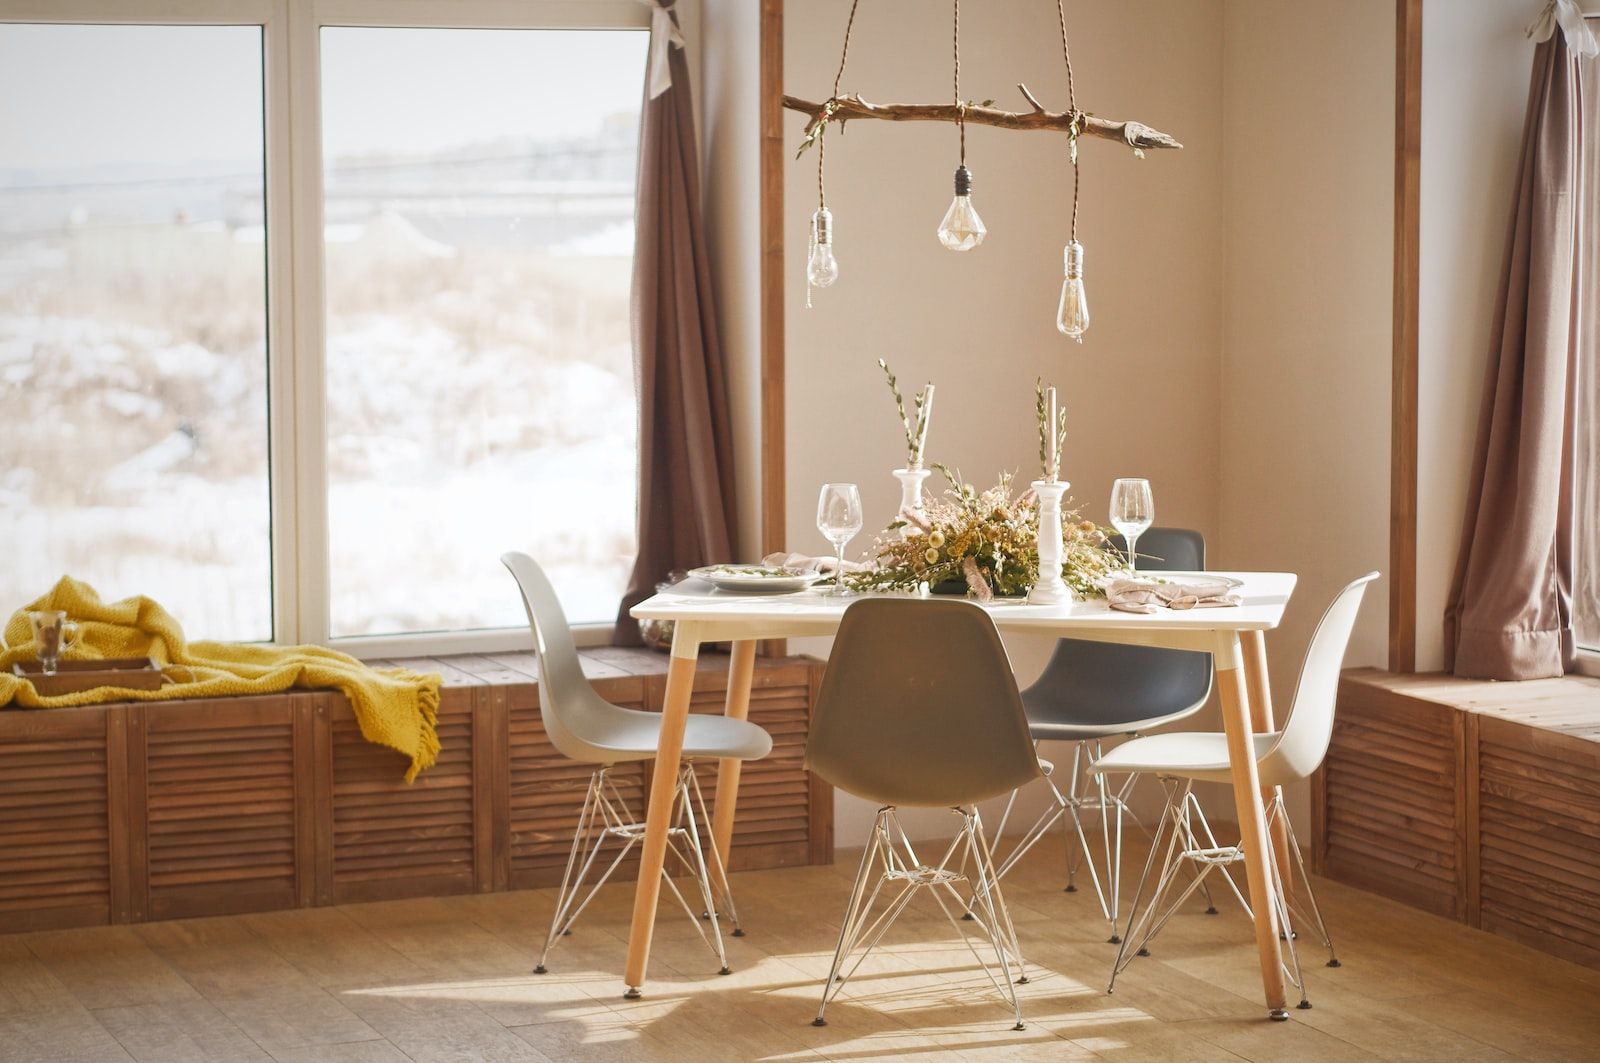 ein Esszimmer im skandinavischen Stil, ein Baumzweig hält 3 Lampenschirme